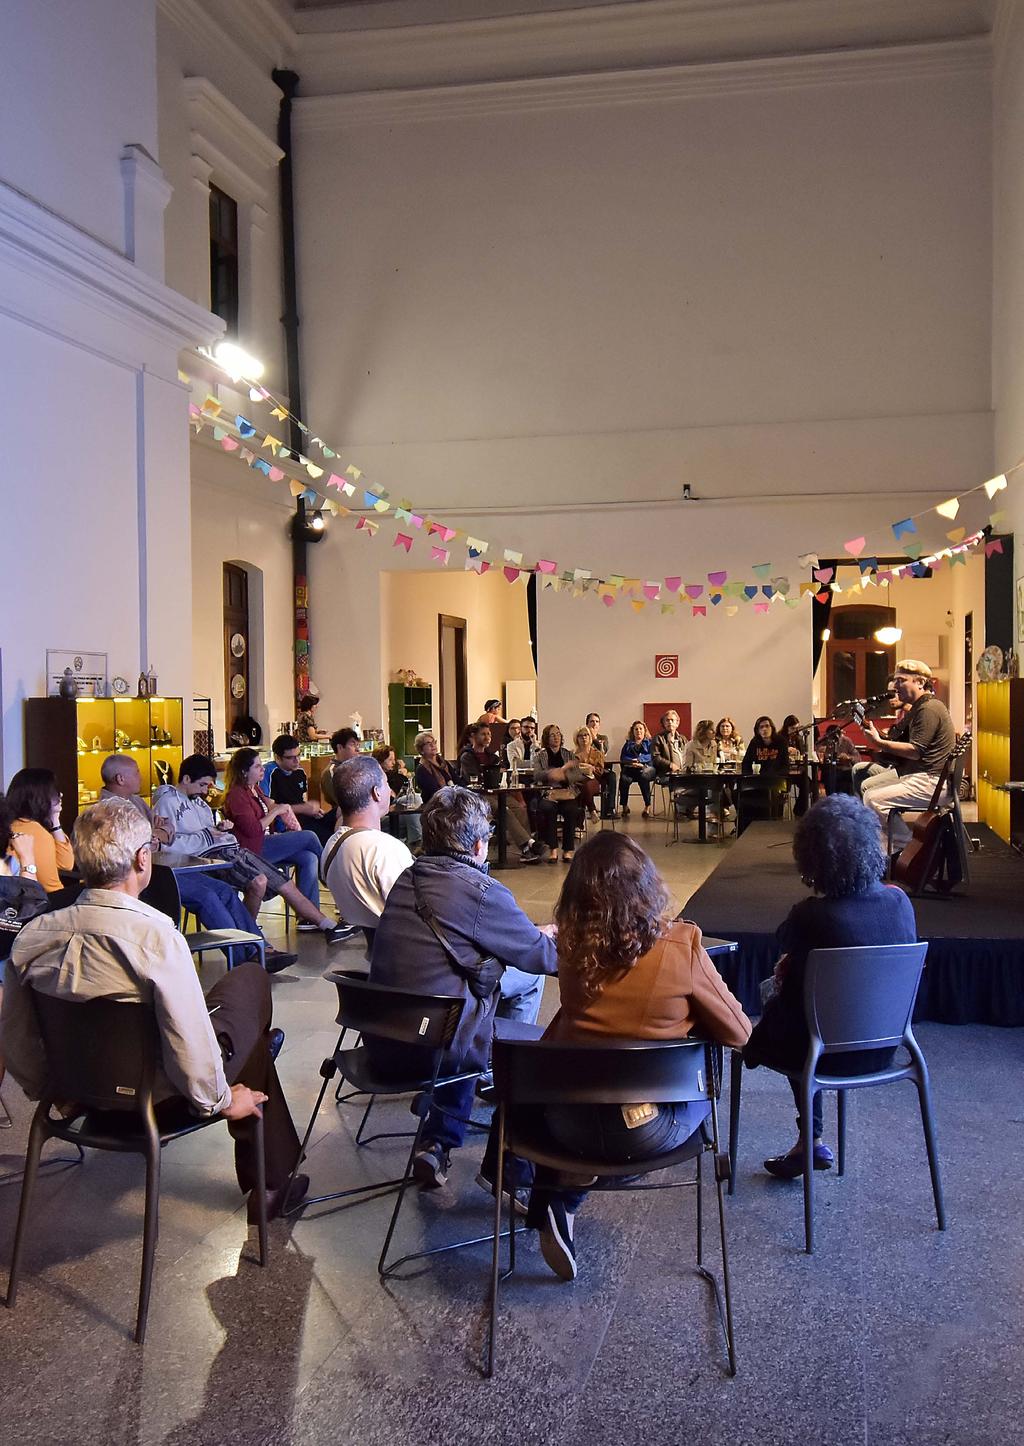 O ENSAIO ABERTO Com entrada franca, o Ensaio Aberto é um programa de parceria com músicos de Minas Gerais para ocupação artística e musical do MM Gerdau - Museu